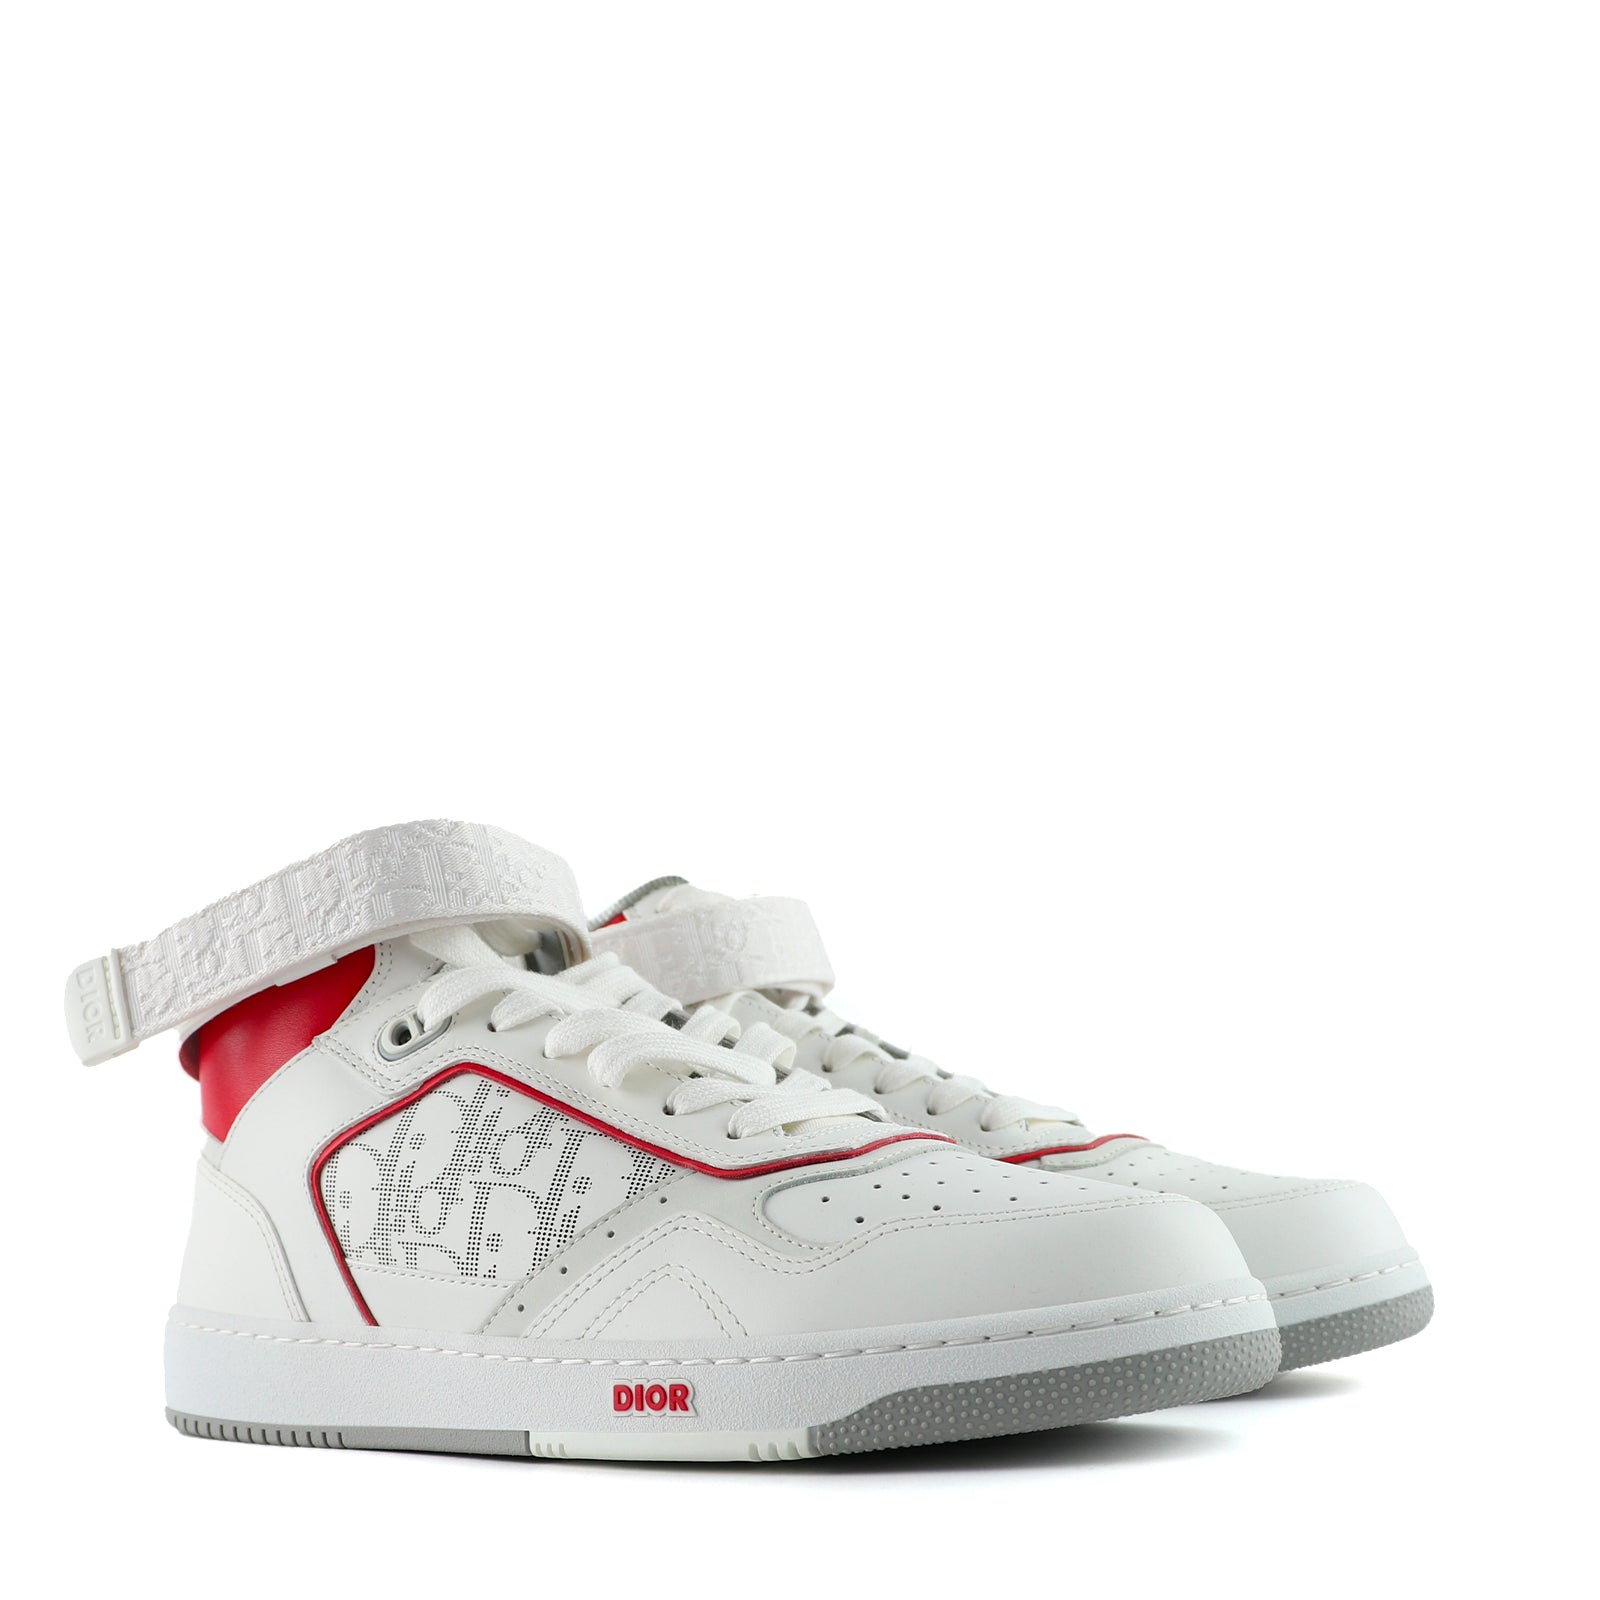 DIOR - Sneakers B27 High en cuir blanc et rouge (T42)